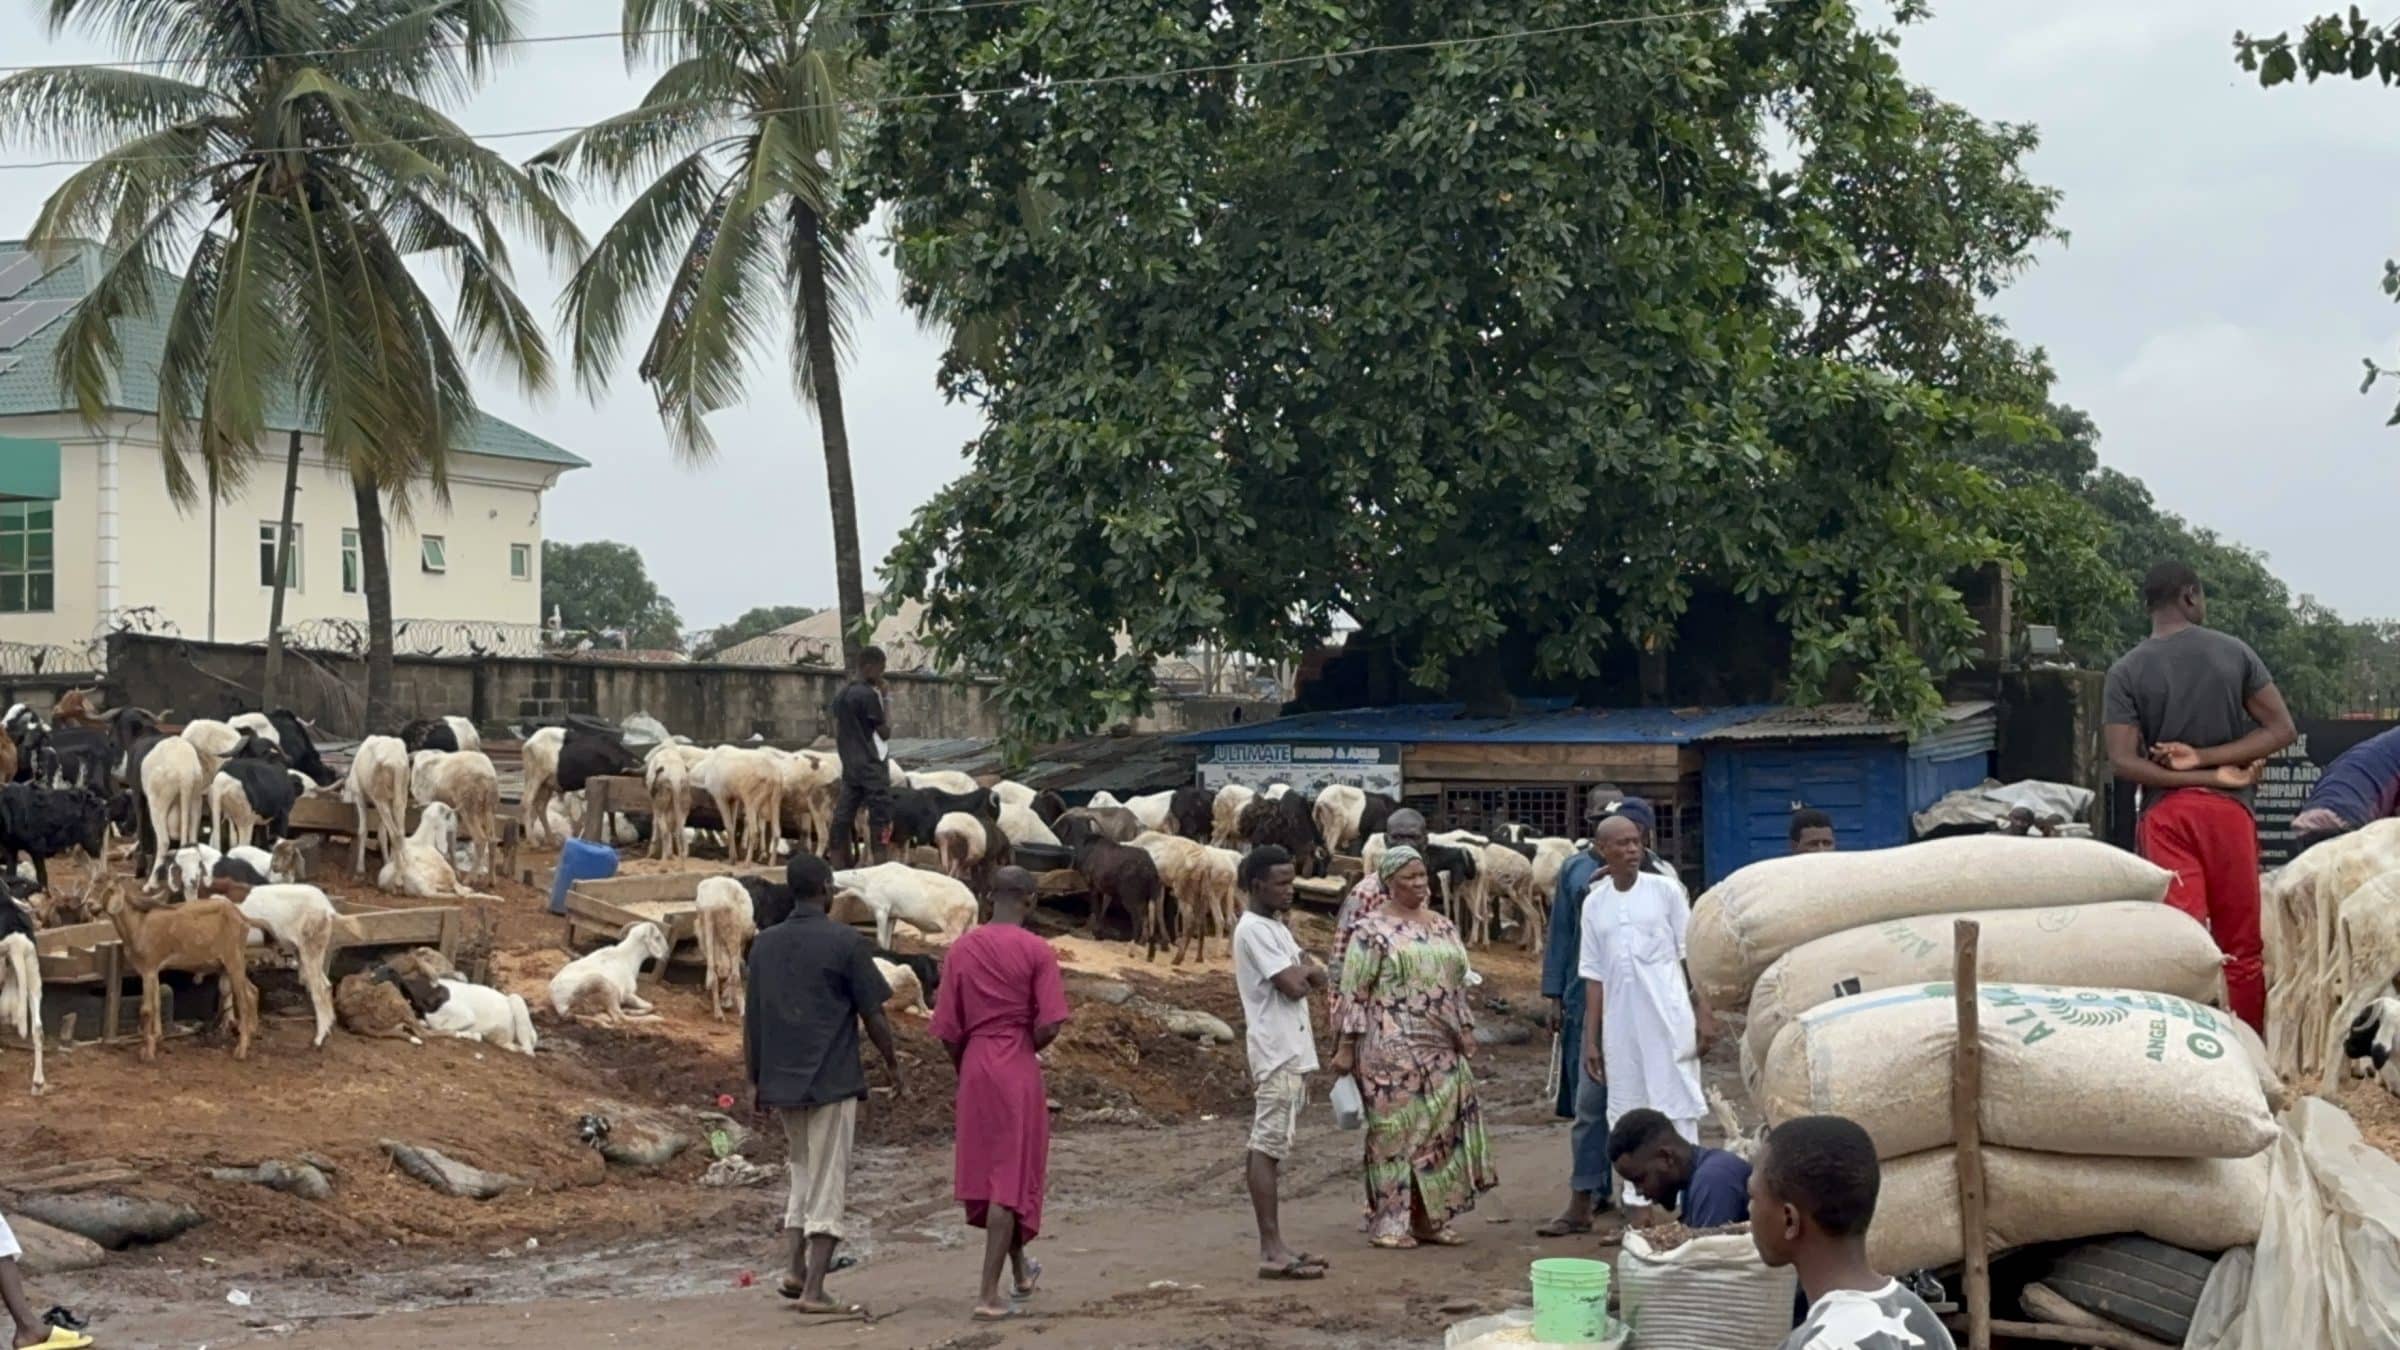 Marché aux chèvres de Lagos